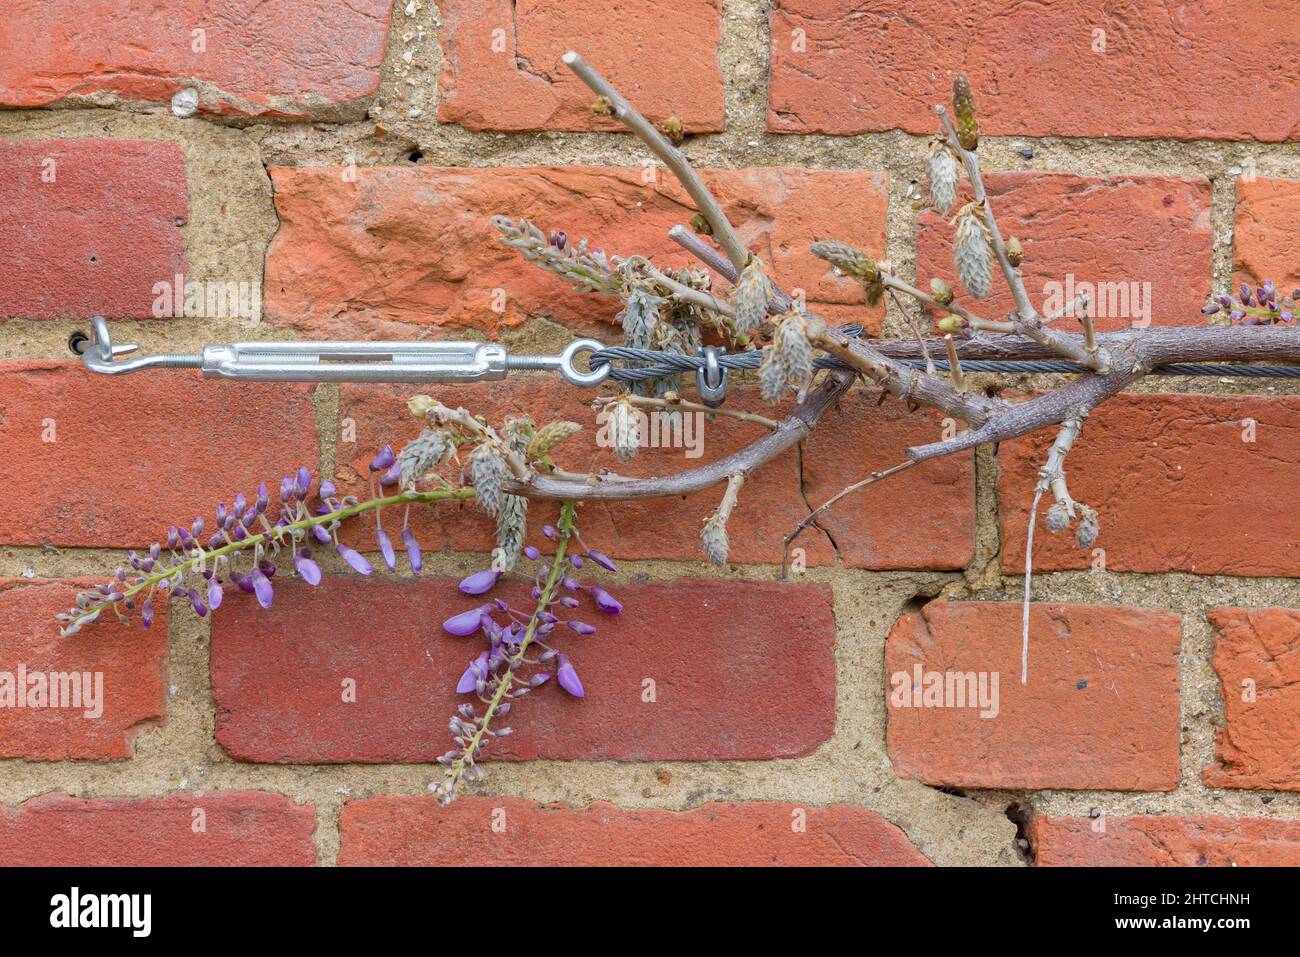 Wisteria pianta o albero arrampicata su un muro di mattoni, Regno Unito. Sostegno o addestramento con fune metallica, tenditore e occhielli della vite. Foto Stock